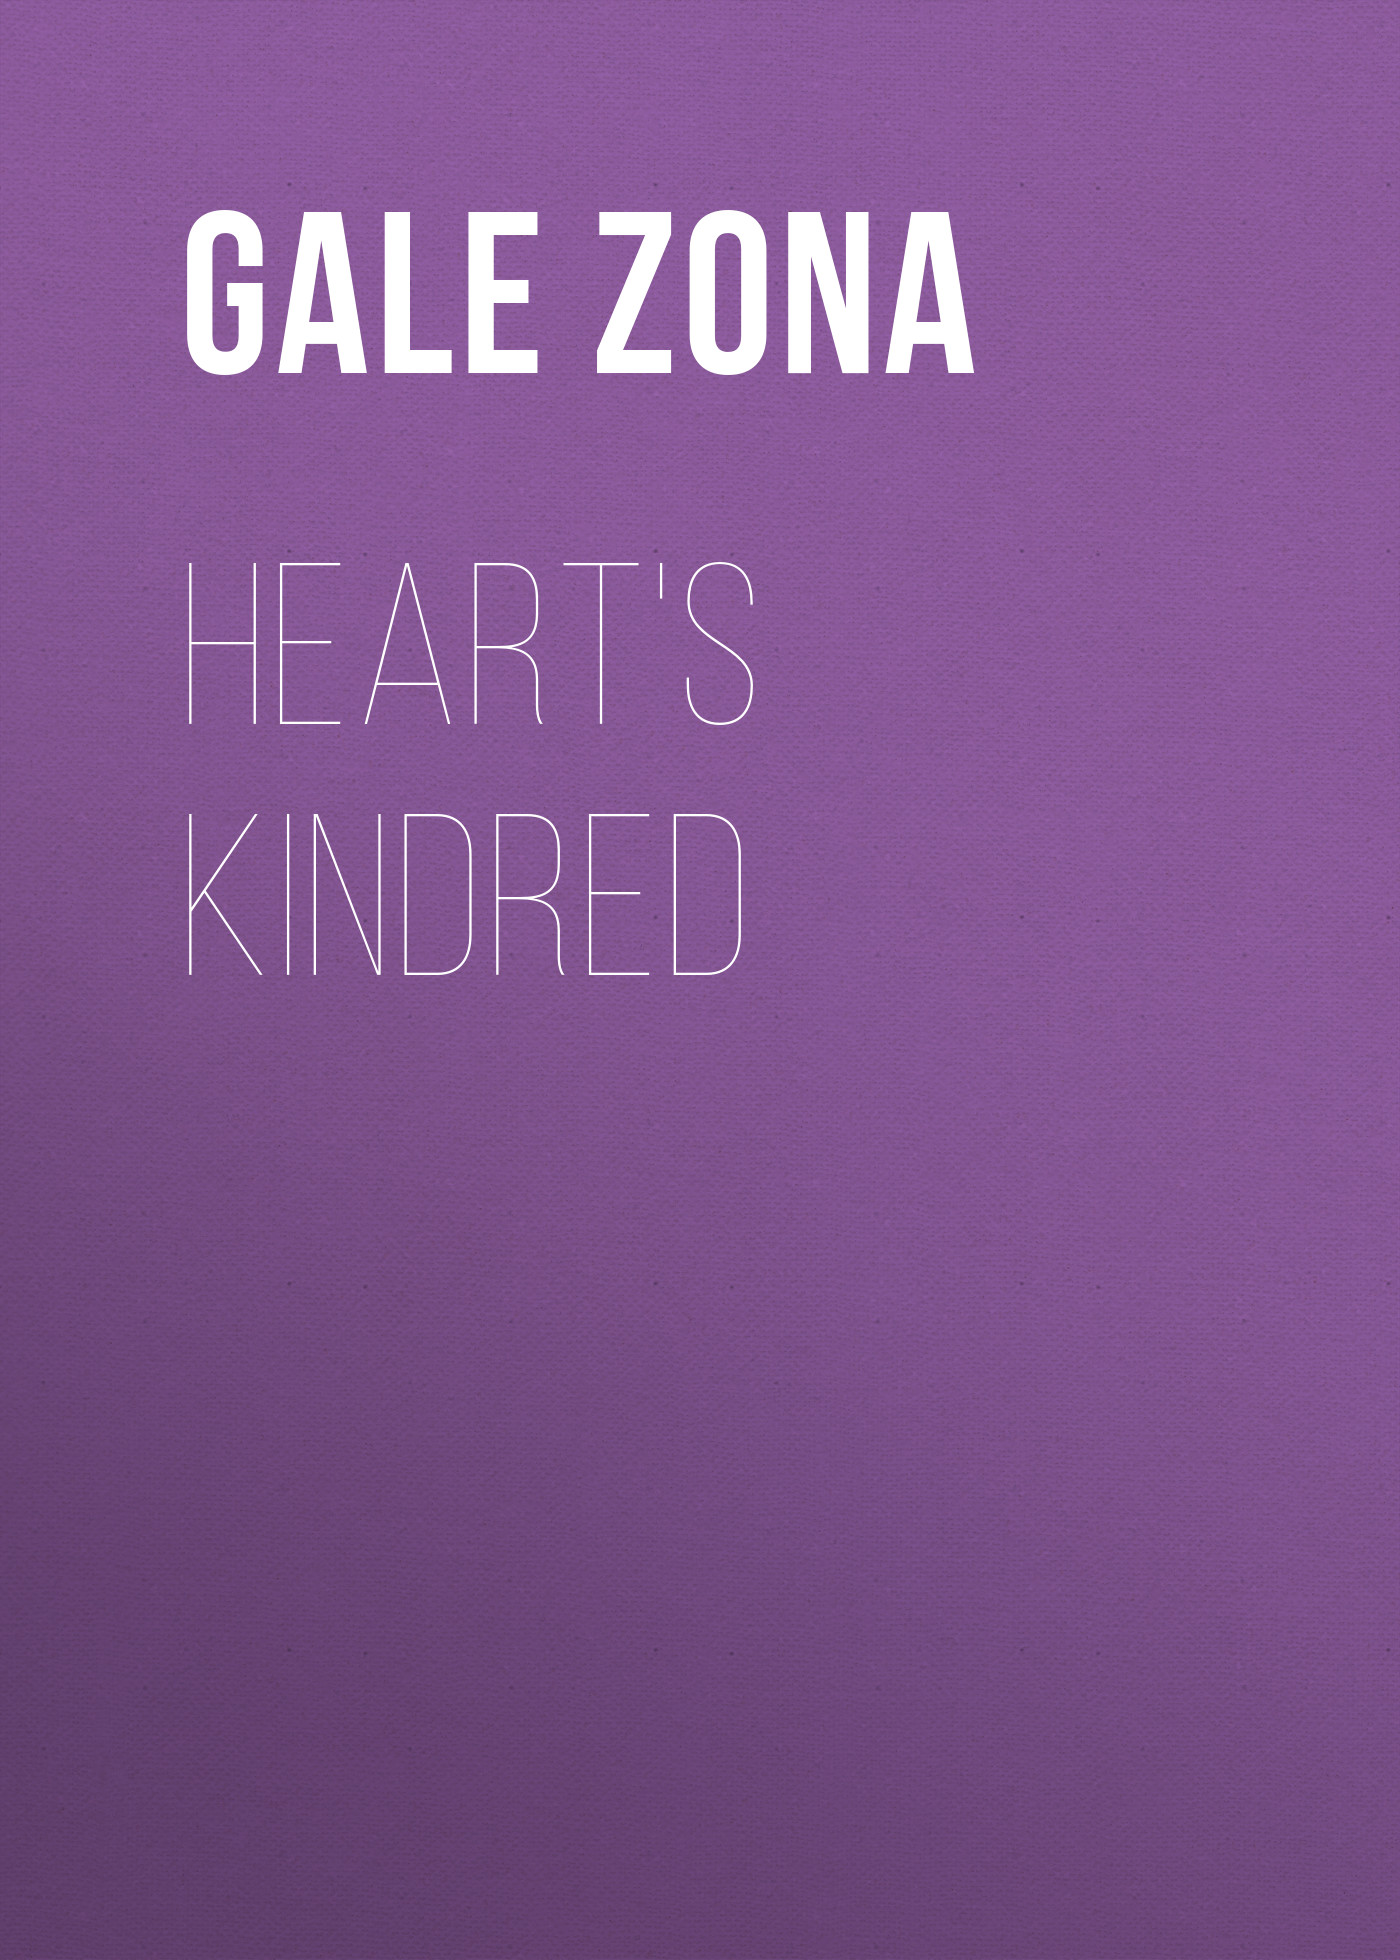 Книга Heart's Kindred из серии , созданная Zona Gale, может относится к жанру Зарубежная старинная литература, Зарубежная классика. Стоимость электронной книги Heart's Kindred с идентификатором 24859347 составляет 0 руб.